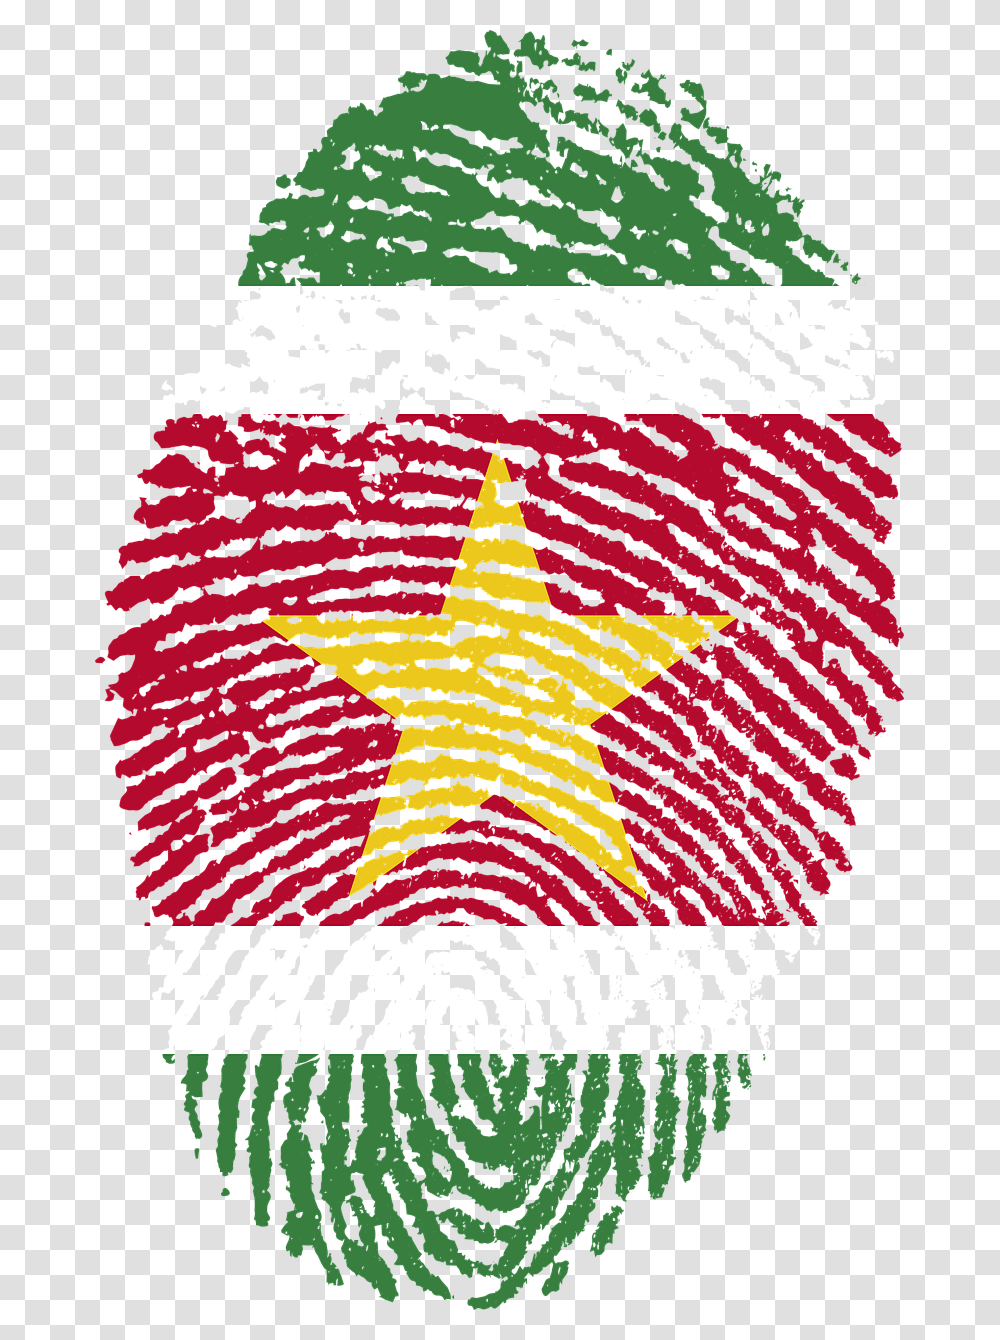 Suriname Flag Fingerprint Free Photo Suriname, Rug, Star Symbol Transparent Png